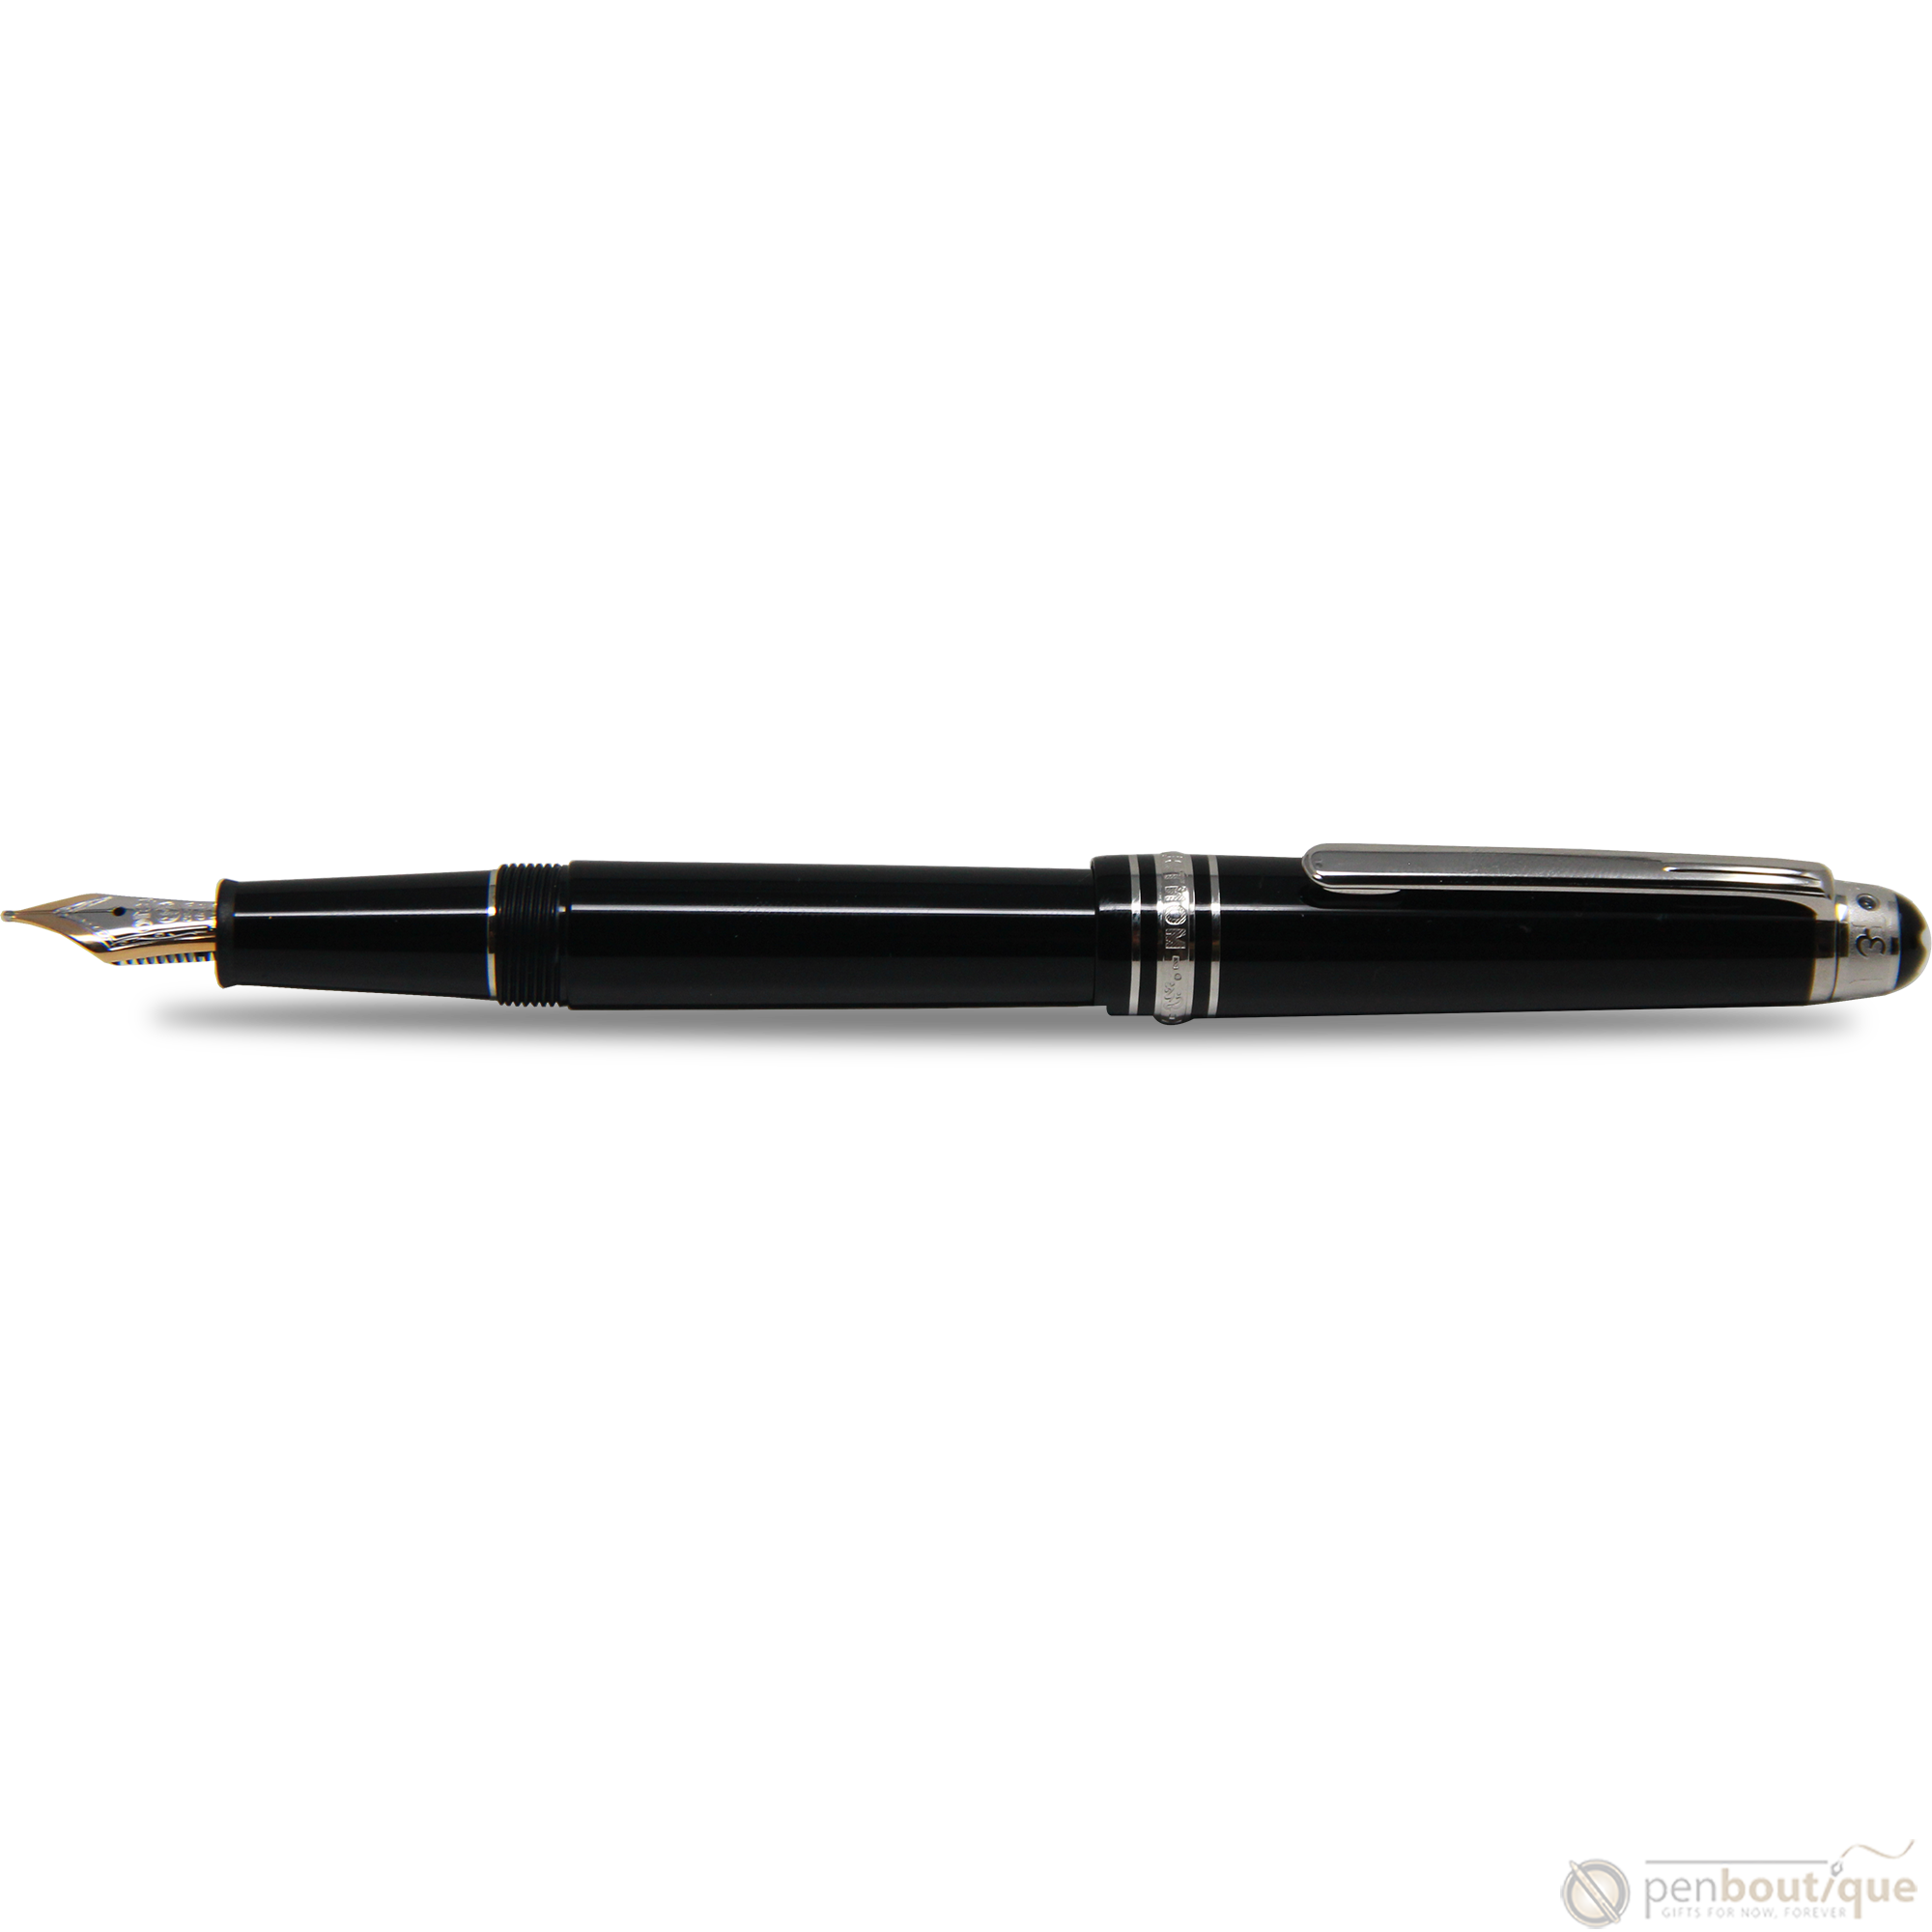 Montblanc Meisterstück Fountain Pen - UNICEF - Black - Platinum Trim - Classique-Pen Boutique Ltd